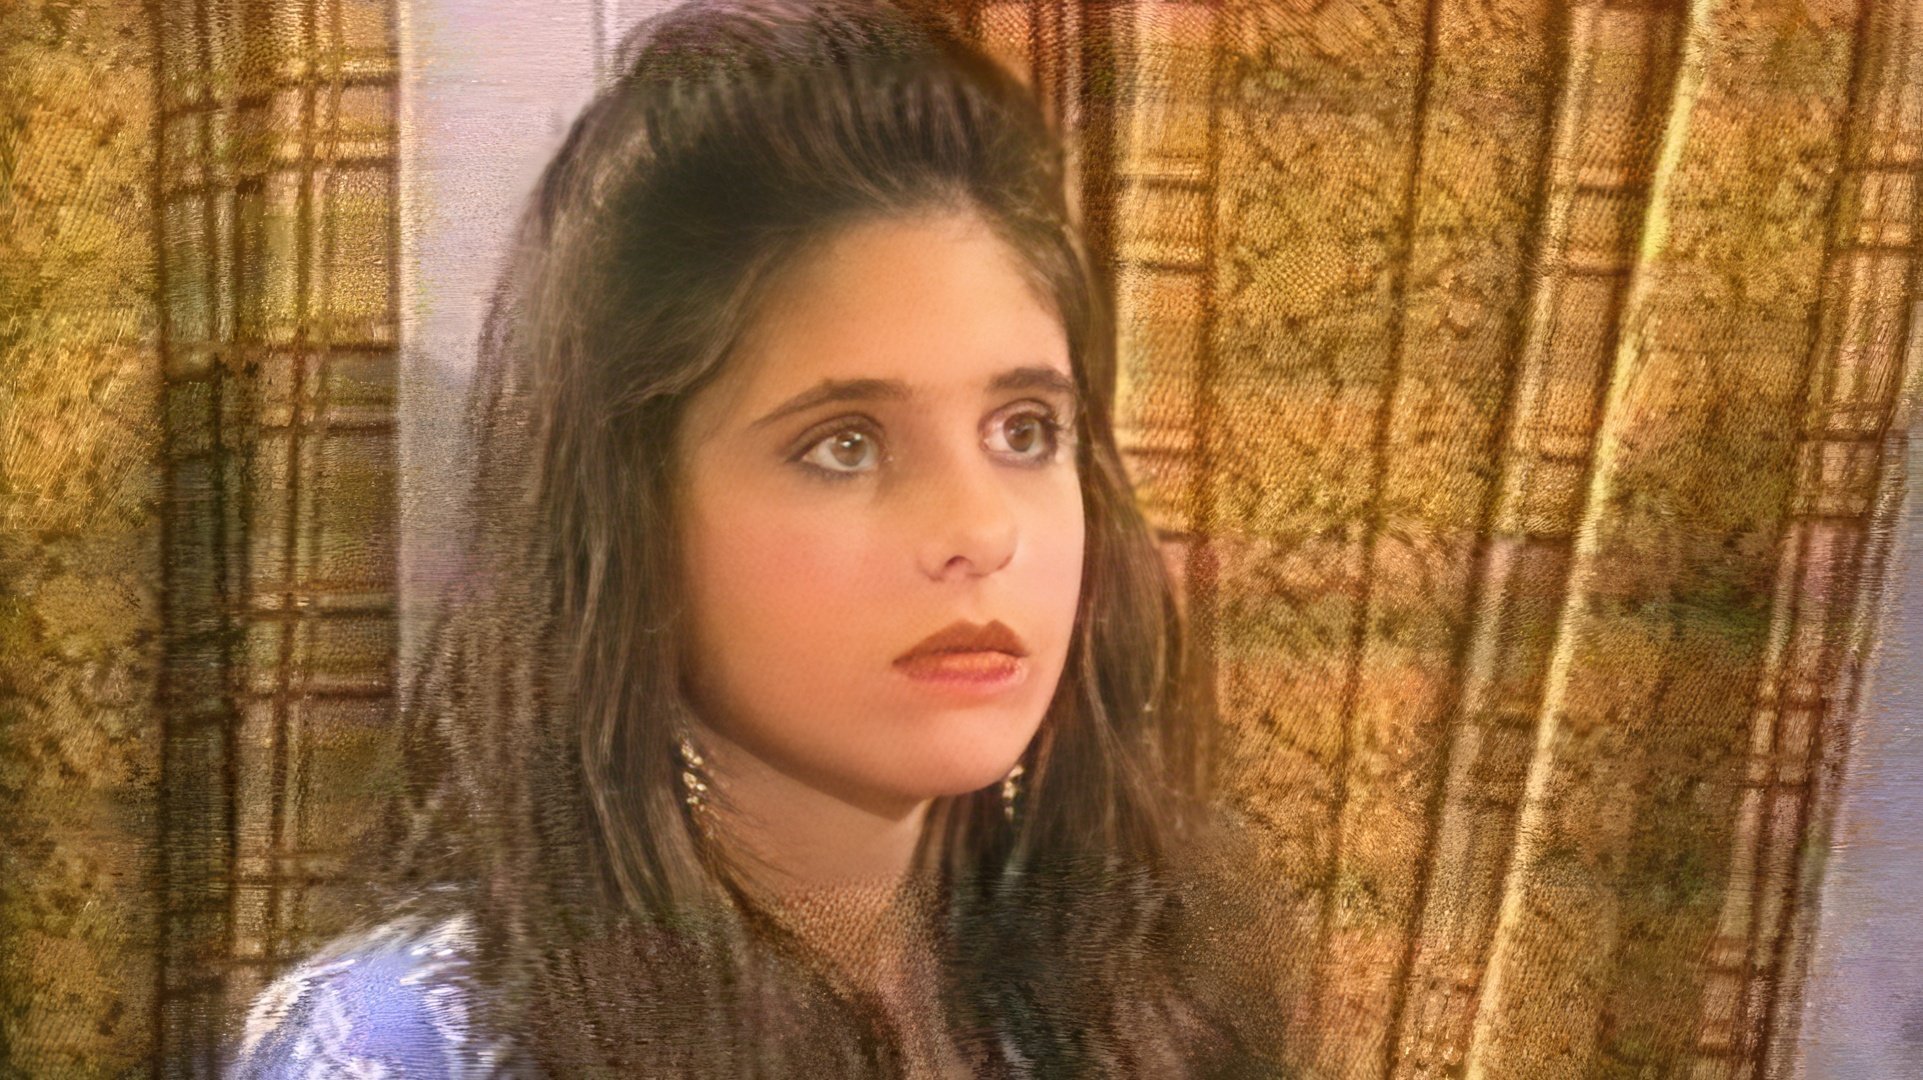 Sarah Michelle Gellar in the TV series 'Swans Crossing' (1992)